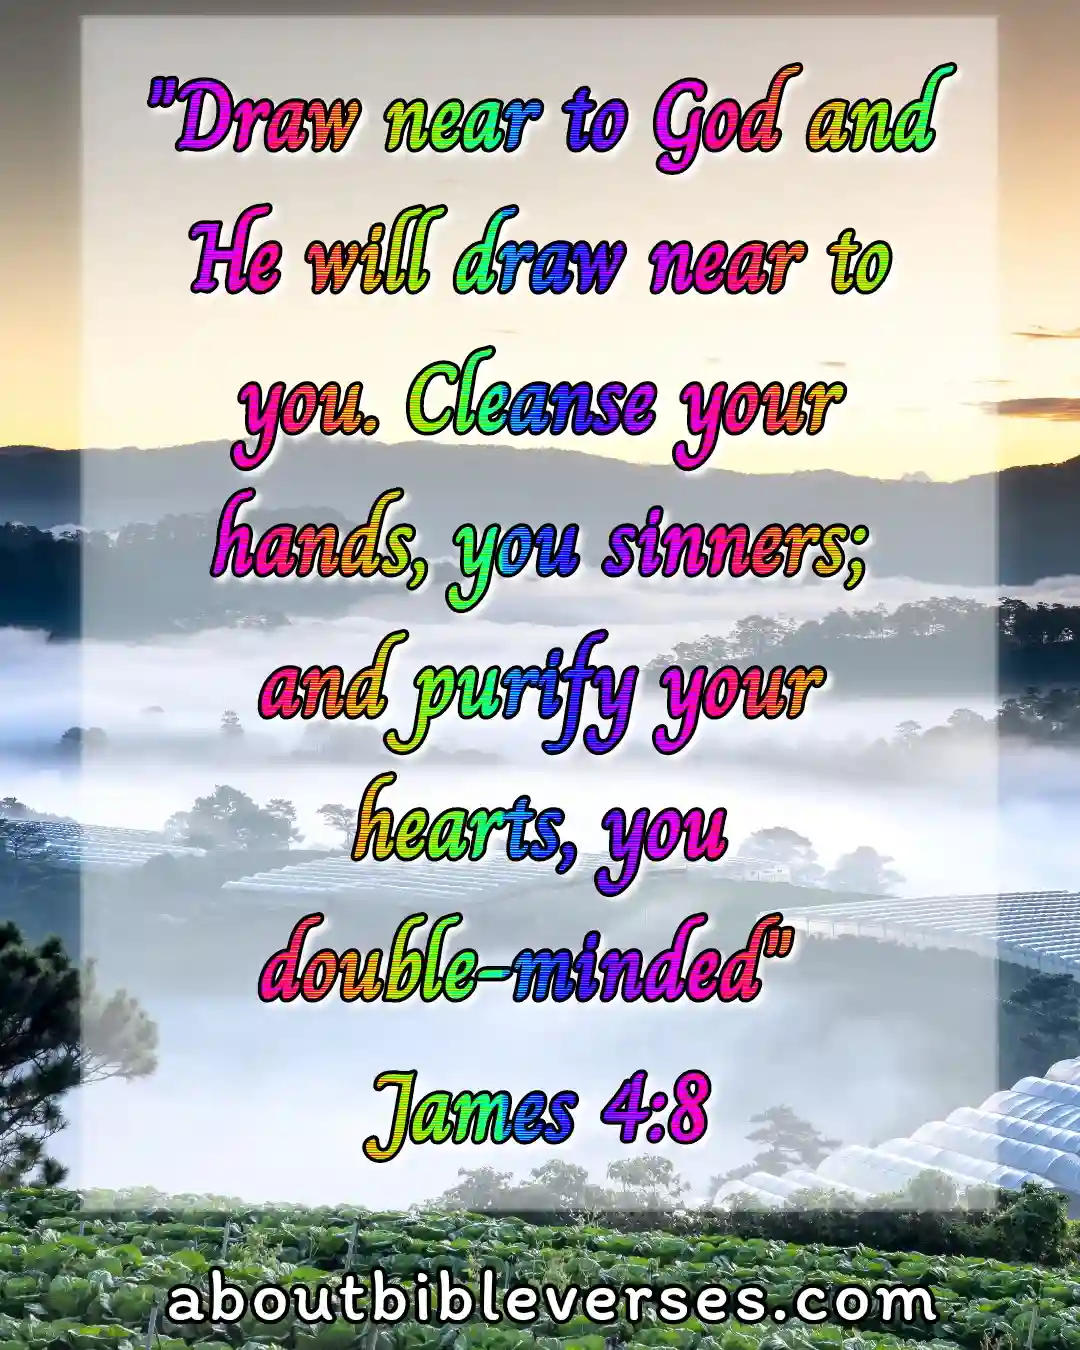 today bible verse (James 4:8)